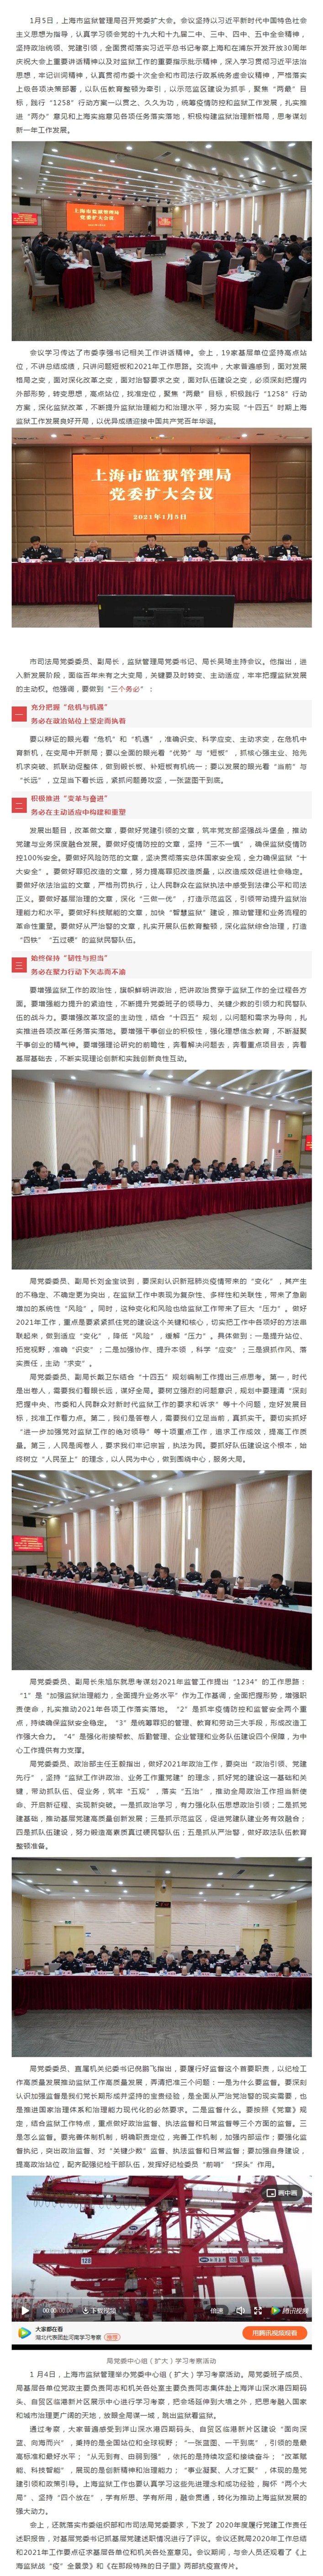 上海市监狱管理局召开党委扩大会 认真谋划2021年工作.jpg